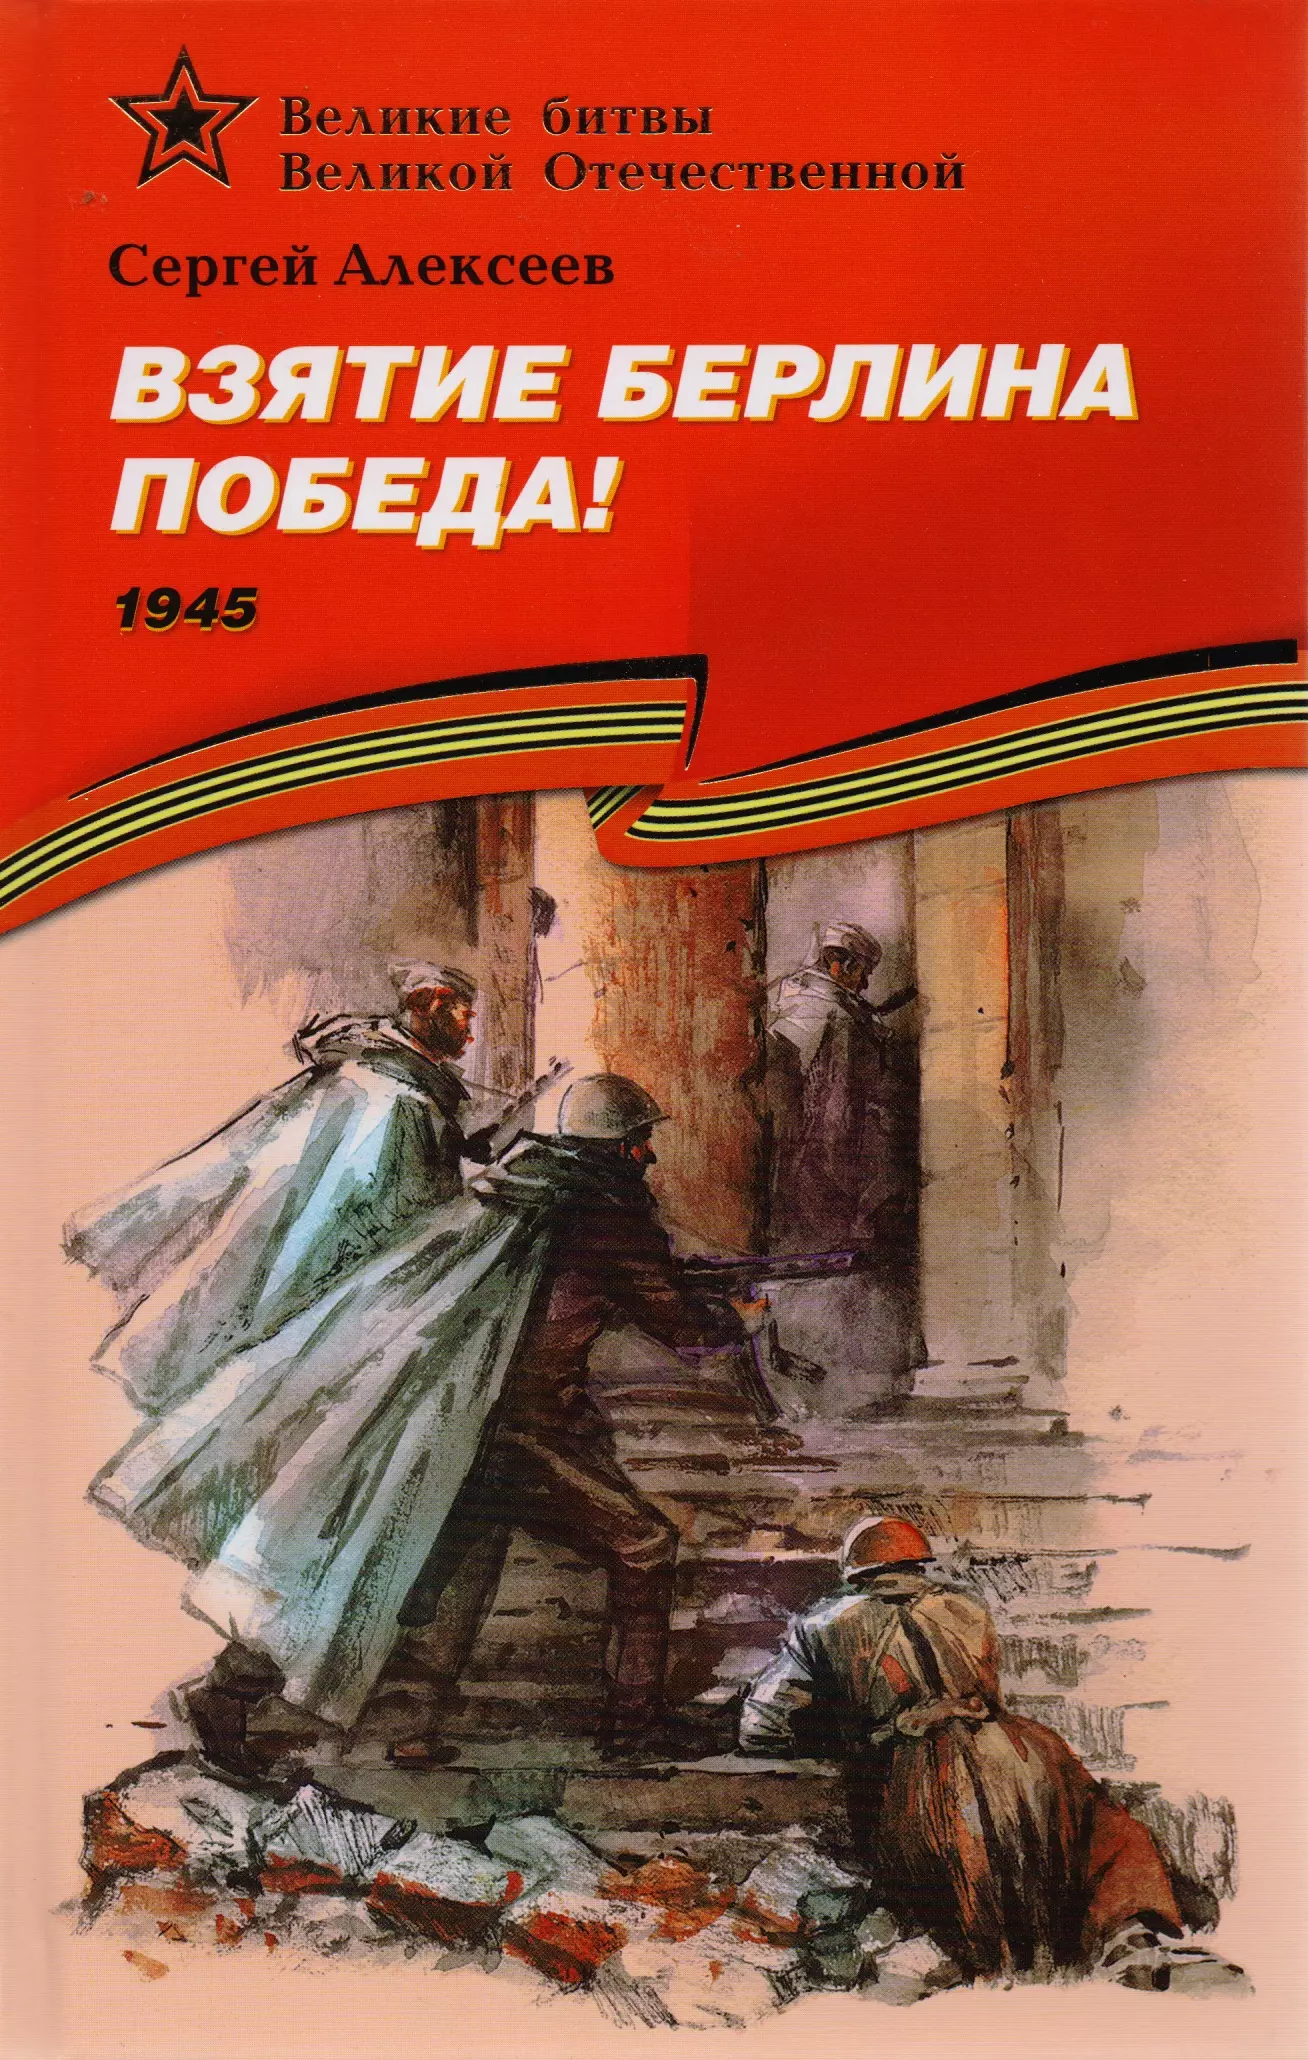 Алексеев Сергей Петрович - Взятие Берлина. Победа! (1945).